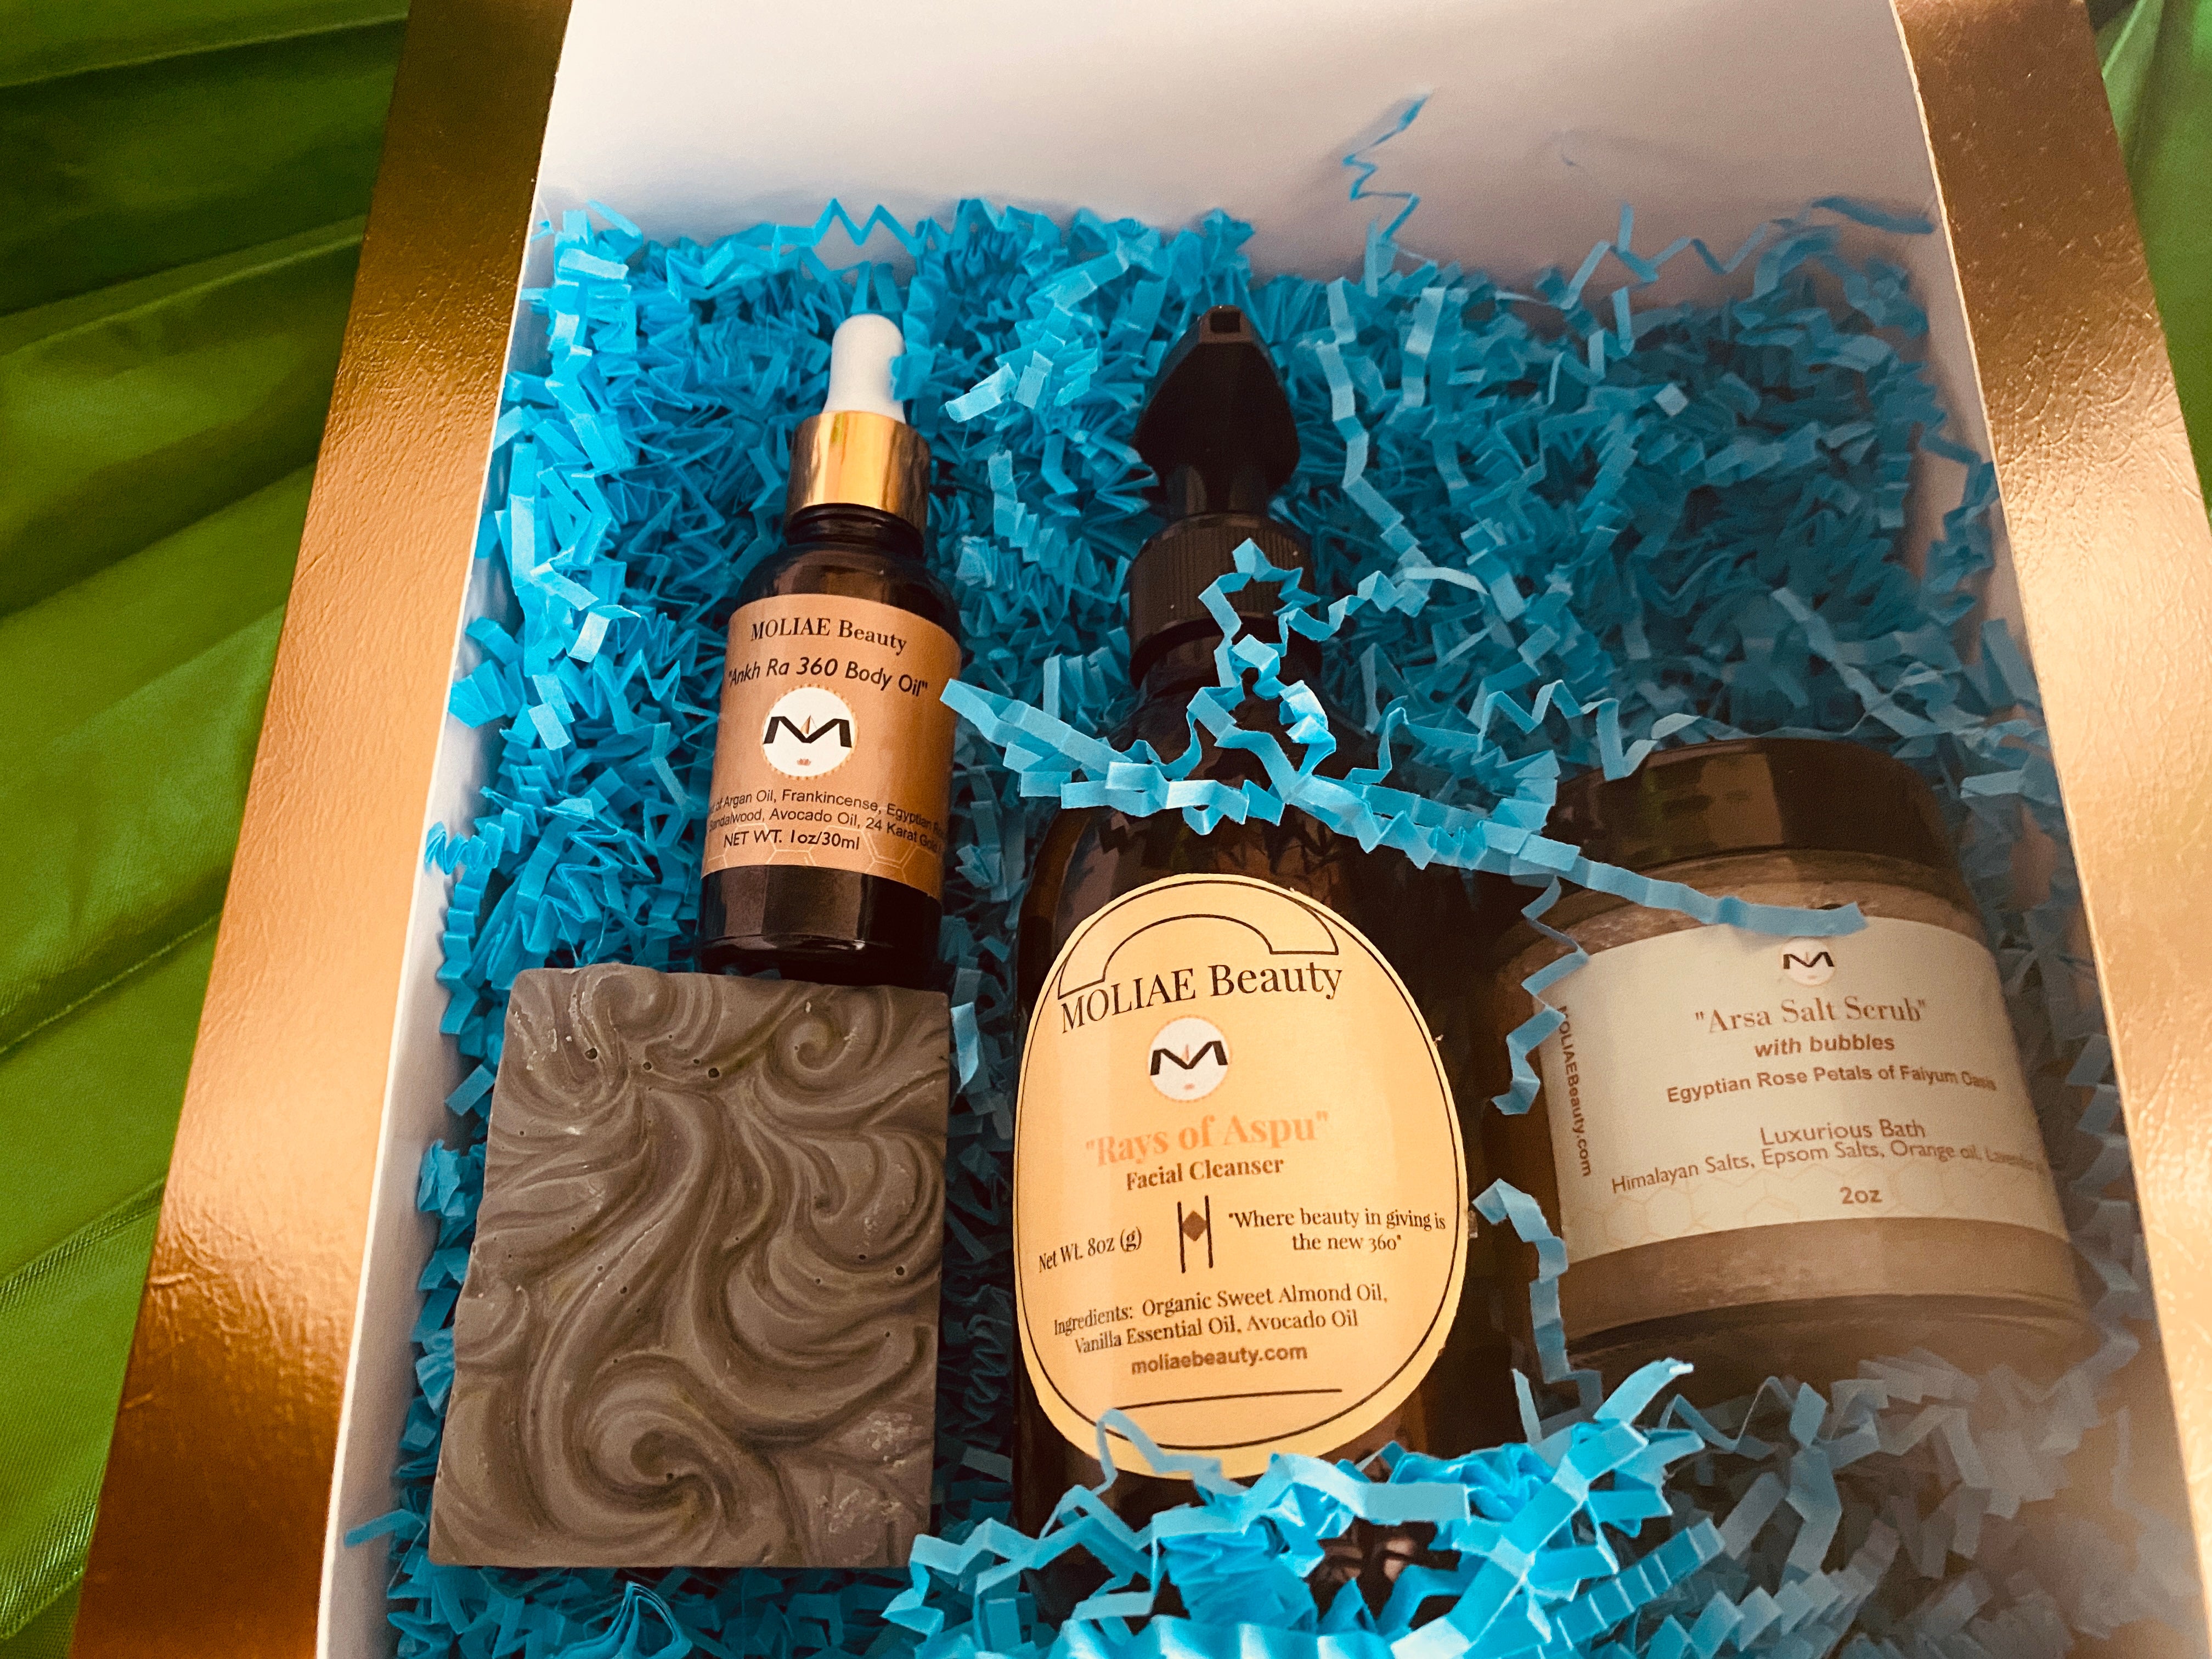 MOLIAE Gold Ankh Ra Aspu | MOLIAE Beauty Gift Box Kit | $189.95